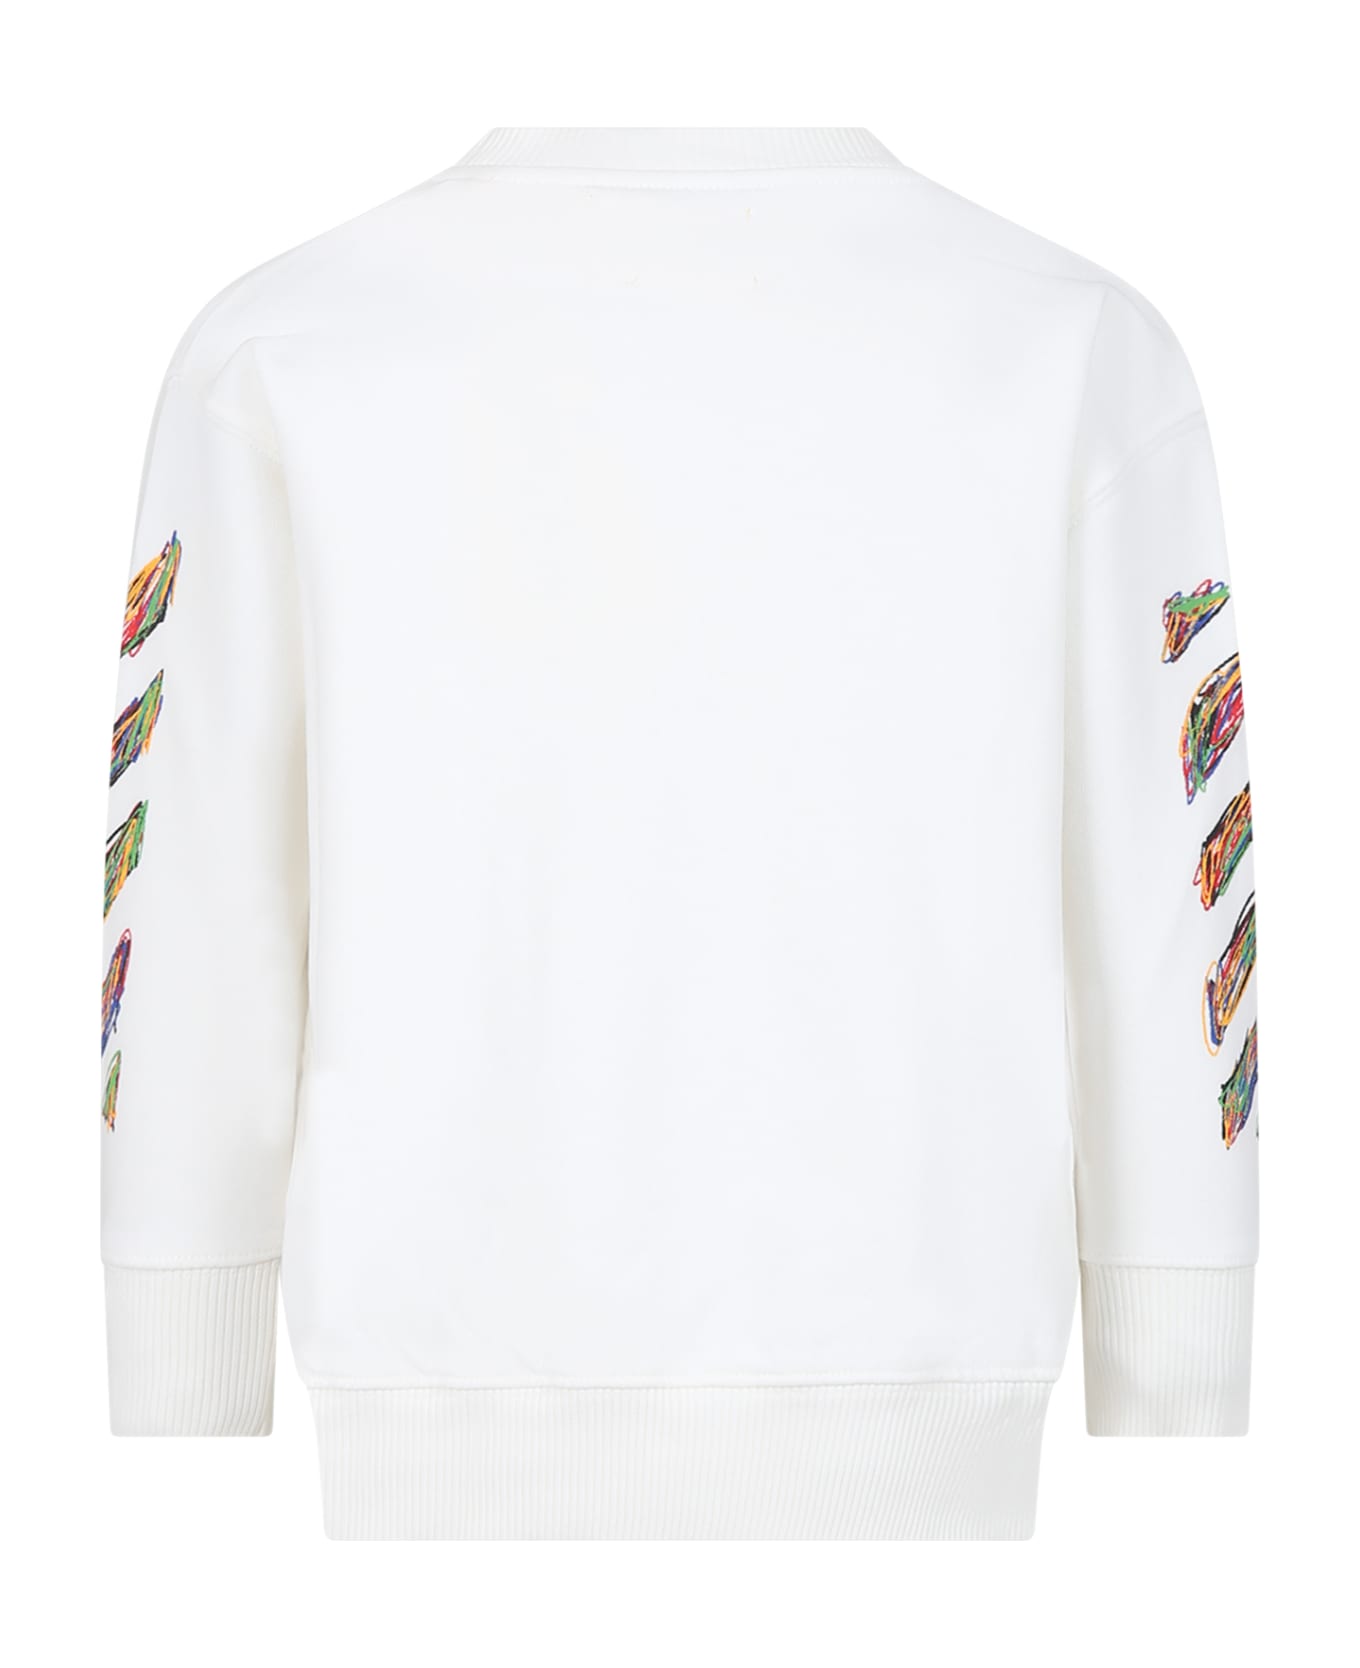 Off-White White Sweatshirt For Boy With Logo - White